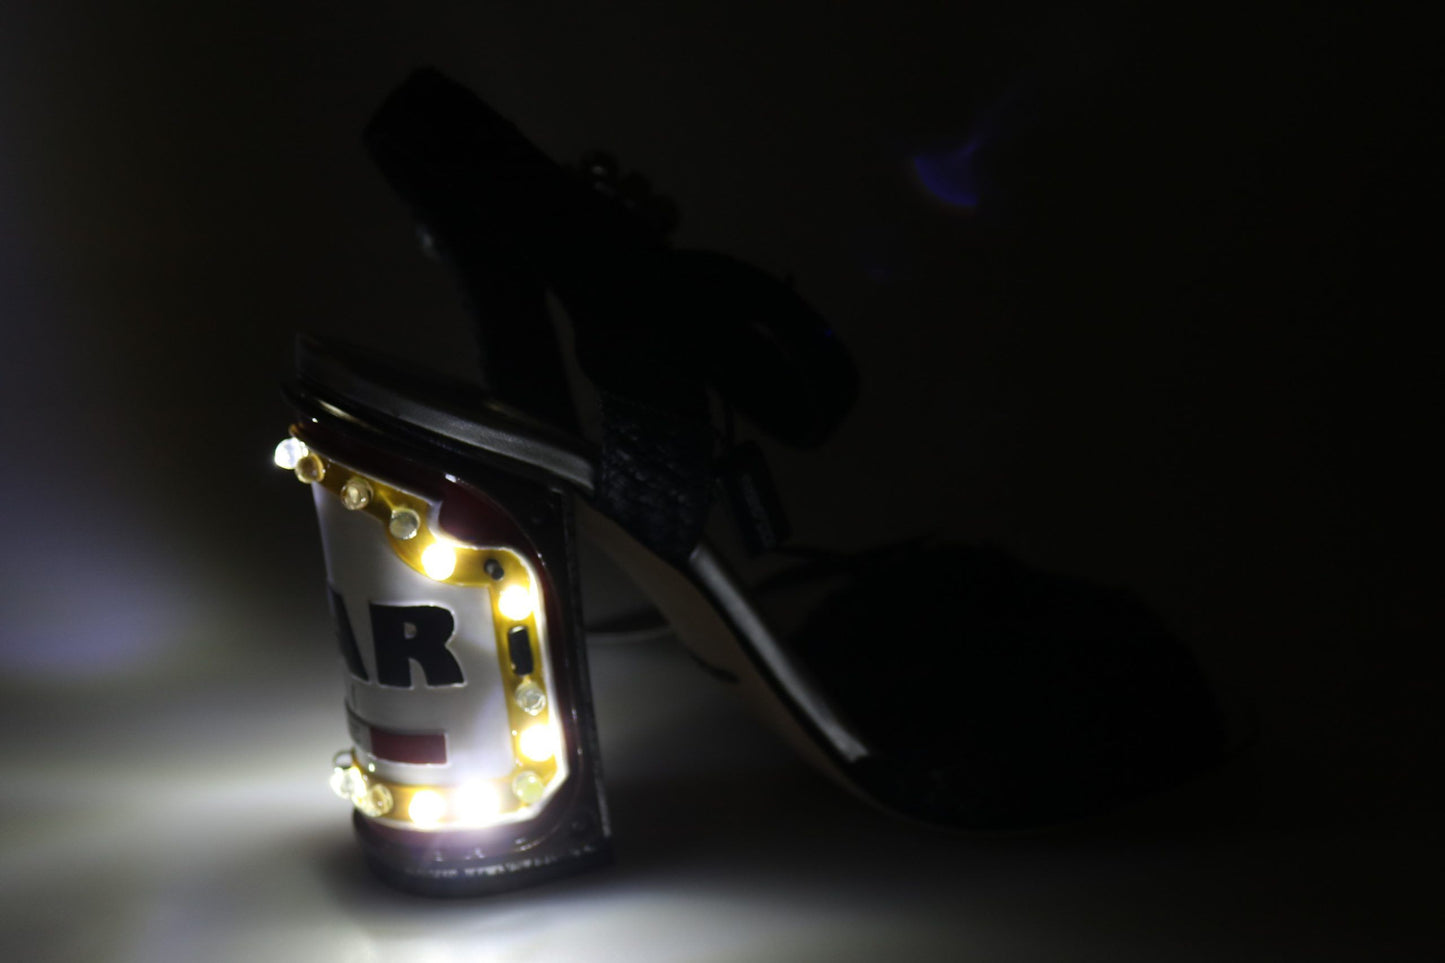 Dolce & Gabbana Elegant Black Ankle Strap Sandals with LED Lights